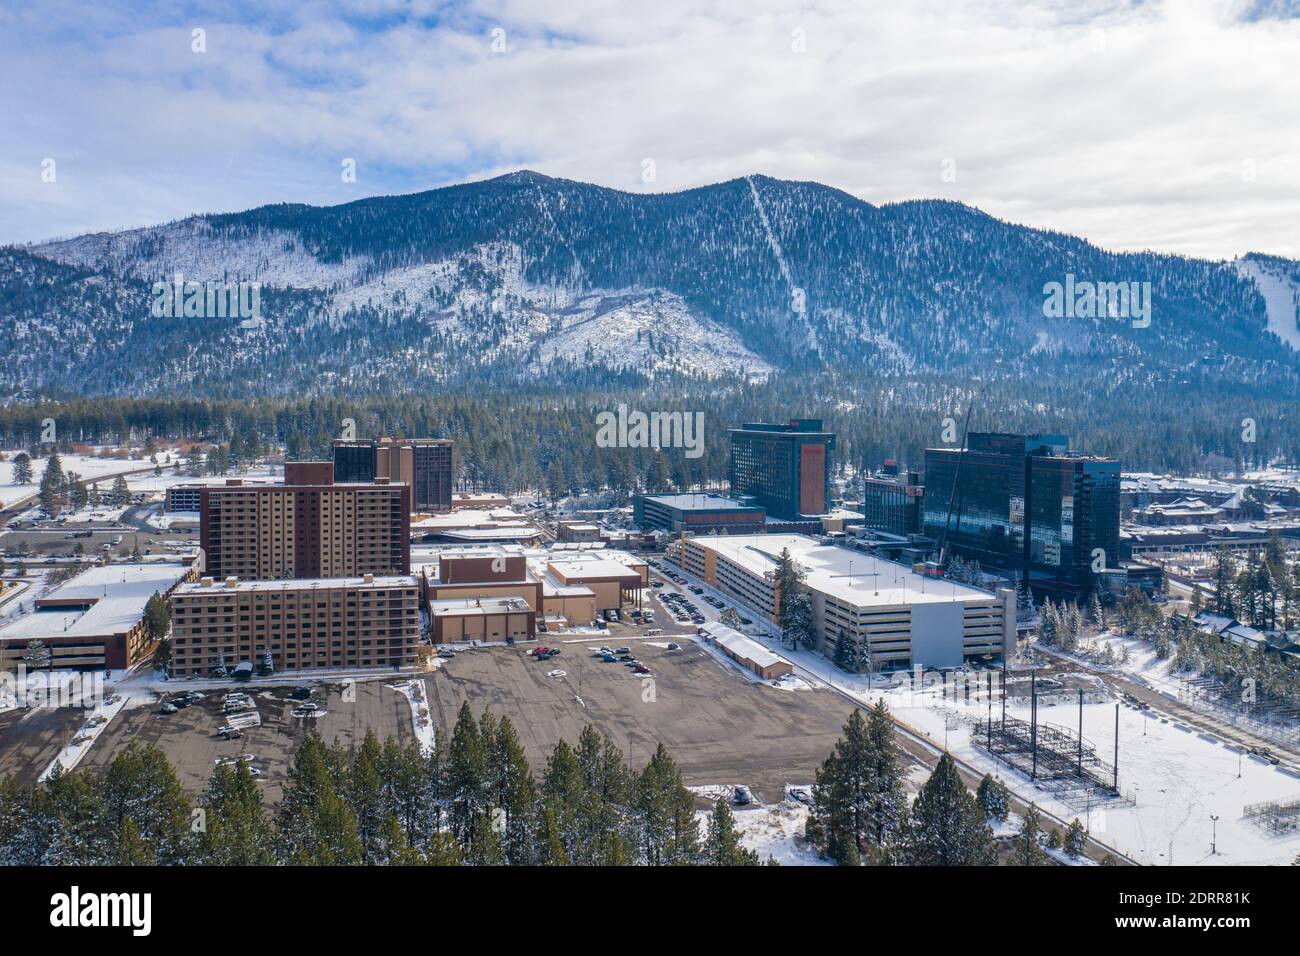 STATELINE, NEVADA, ÉTATS-UNIS - 15 décembre 2020 : les casinos et la station de ski Heavenly Mountain dominent l'horizon des villes adjacentes de Stateline, ne Banque D'Images